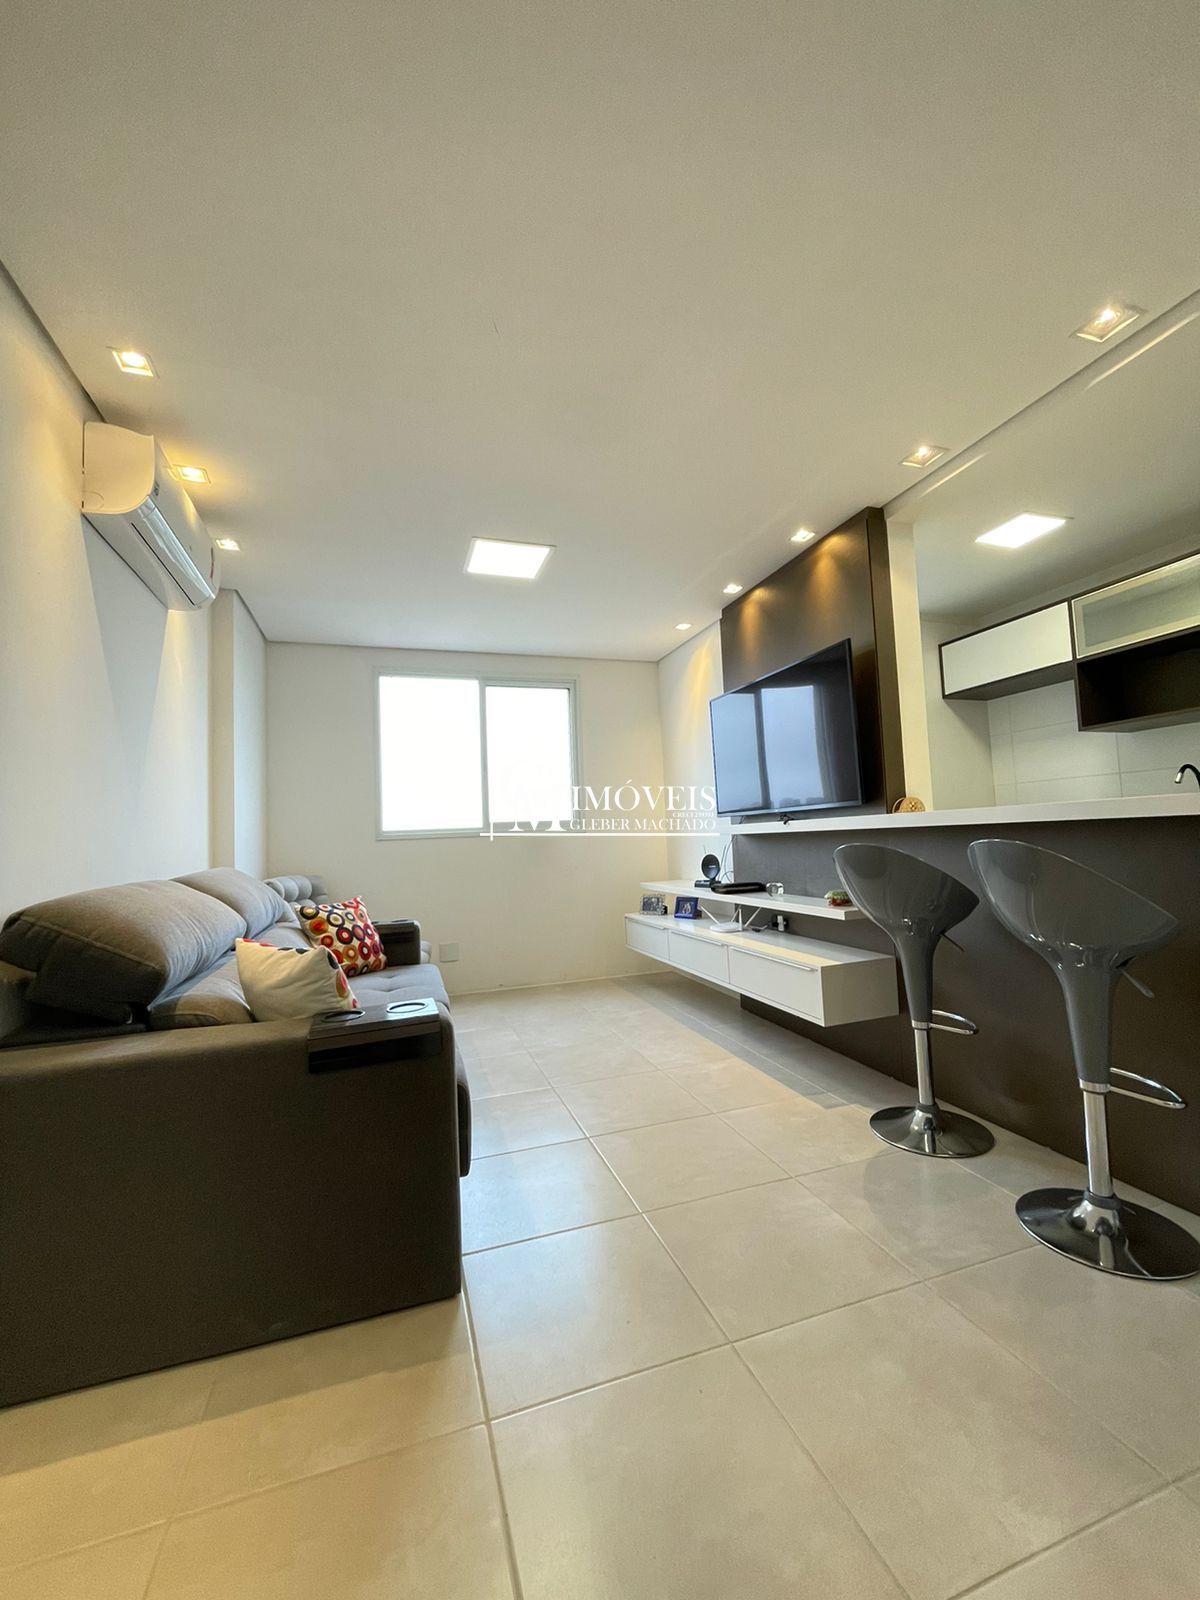 Apartamento de 1 dormitório mobiliado em Torres RS